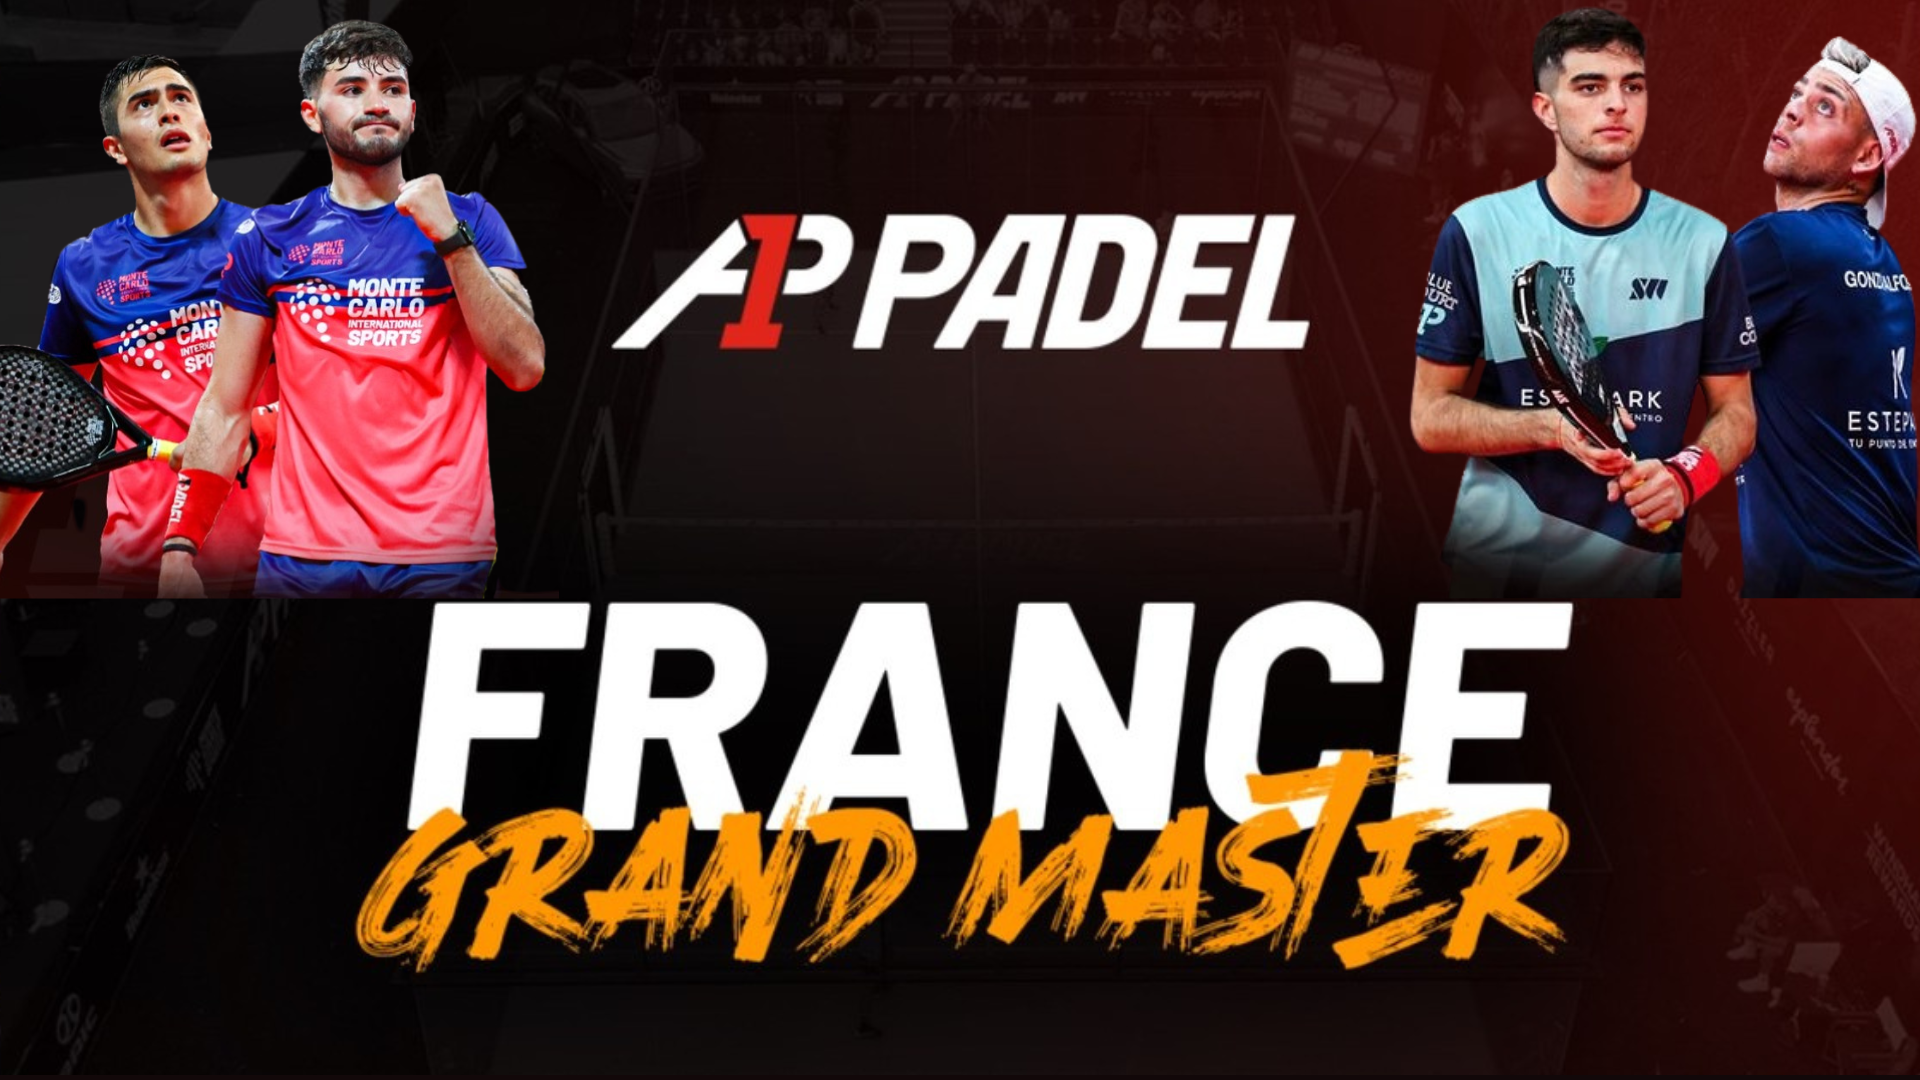 A1 Padel Grande Mestre da França – De Pascual/Alfonso na final contra Dal Bianco/Arce